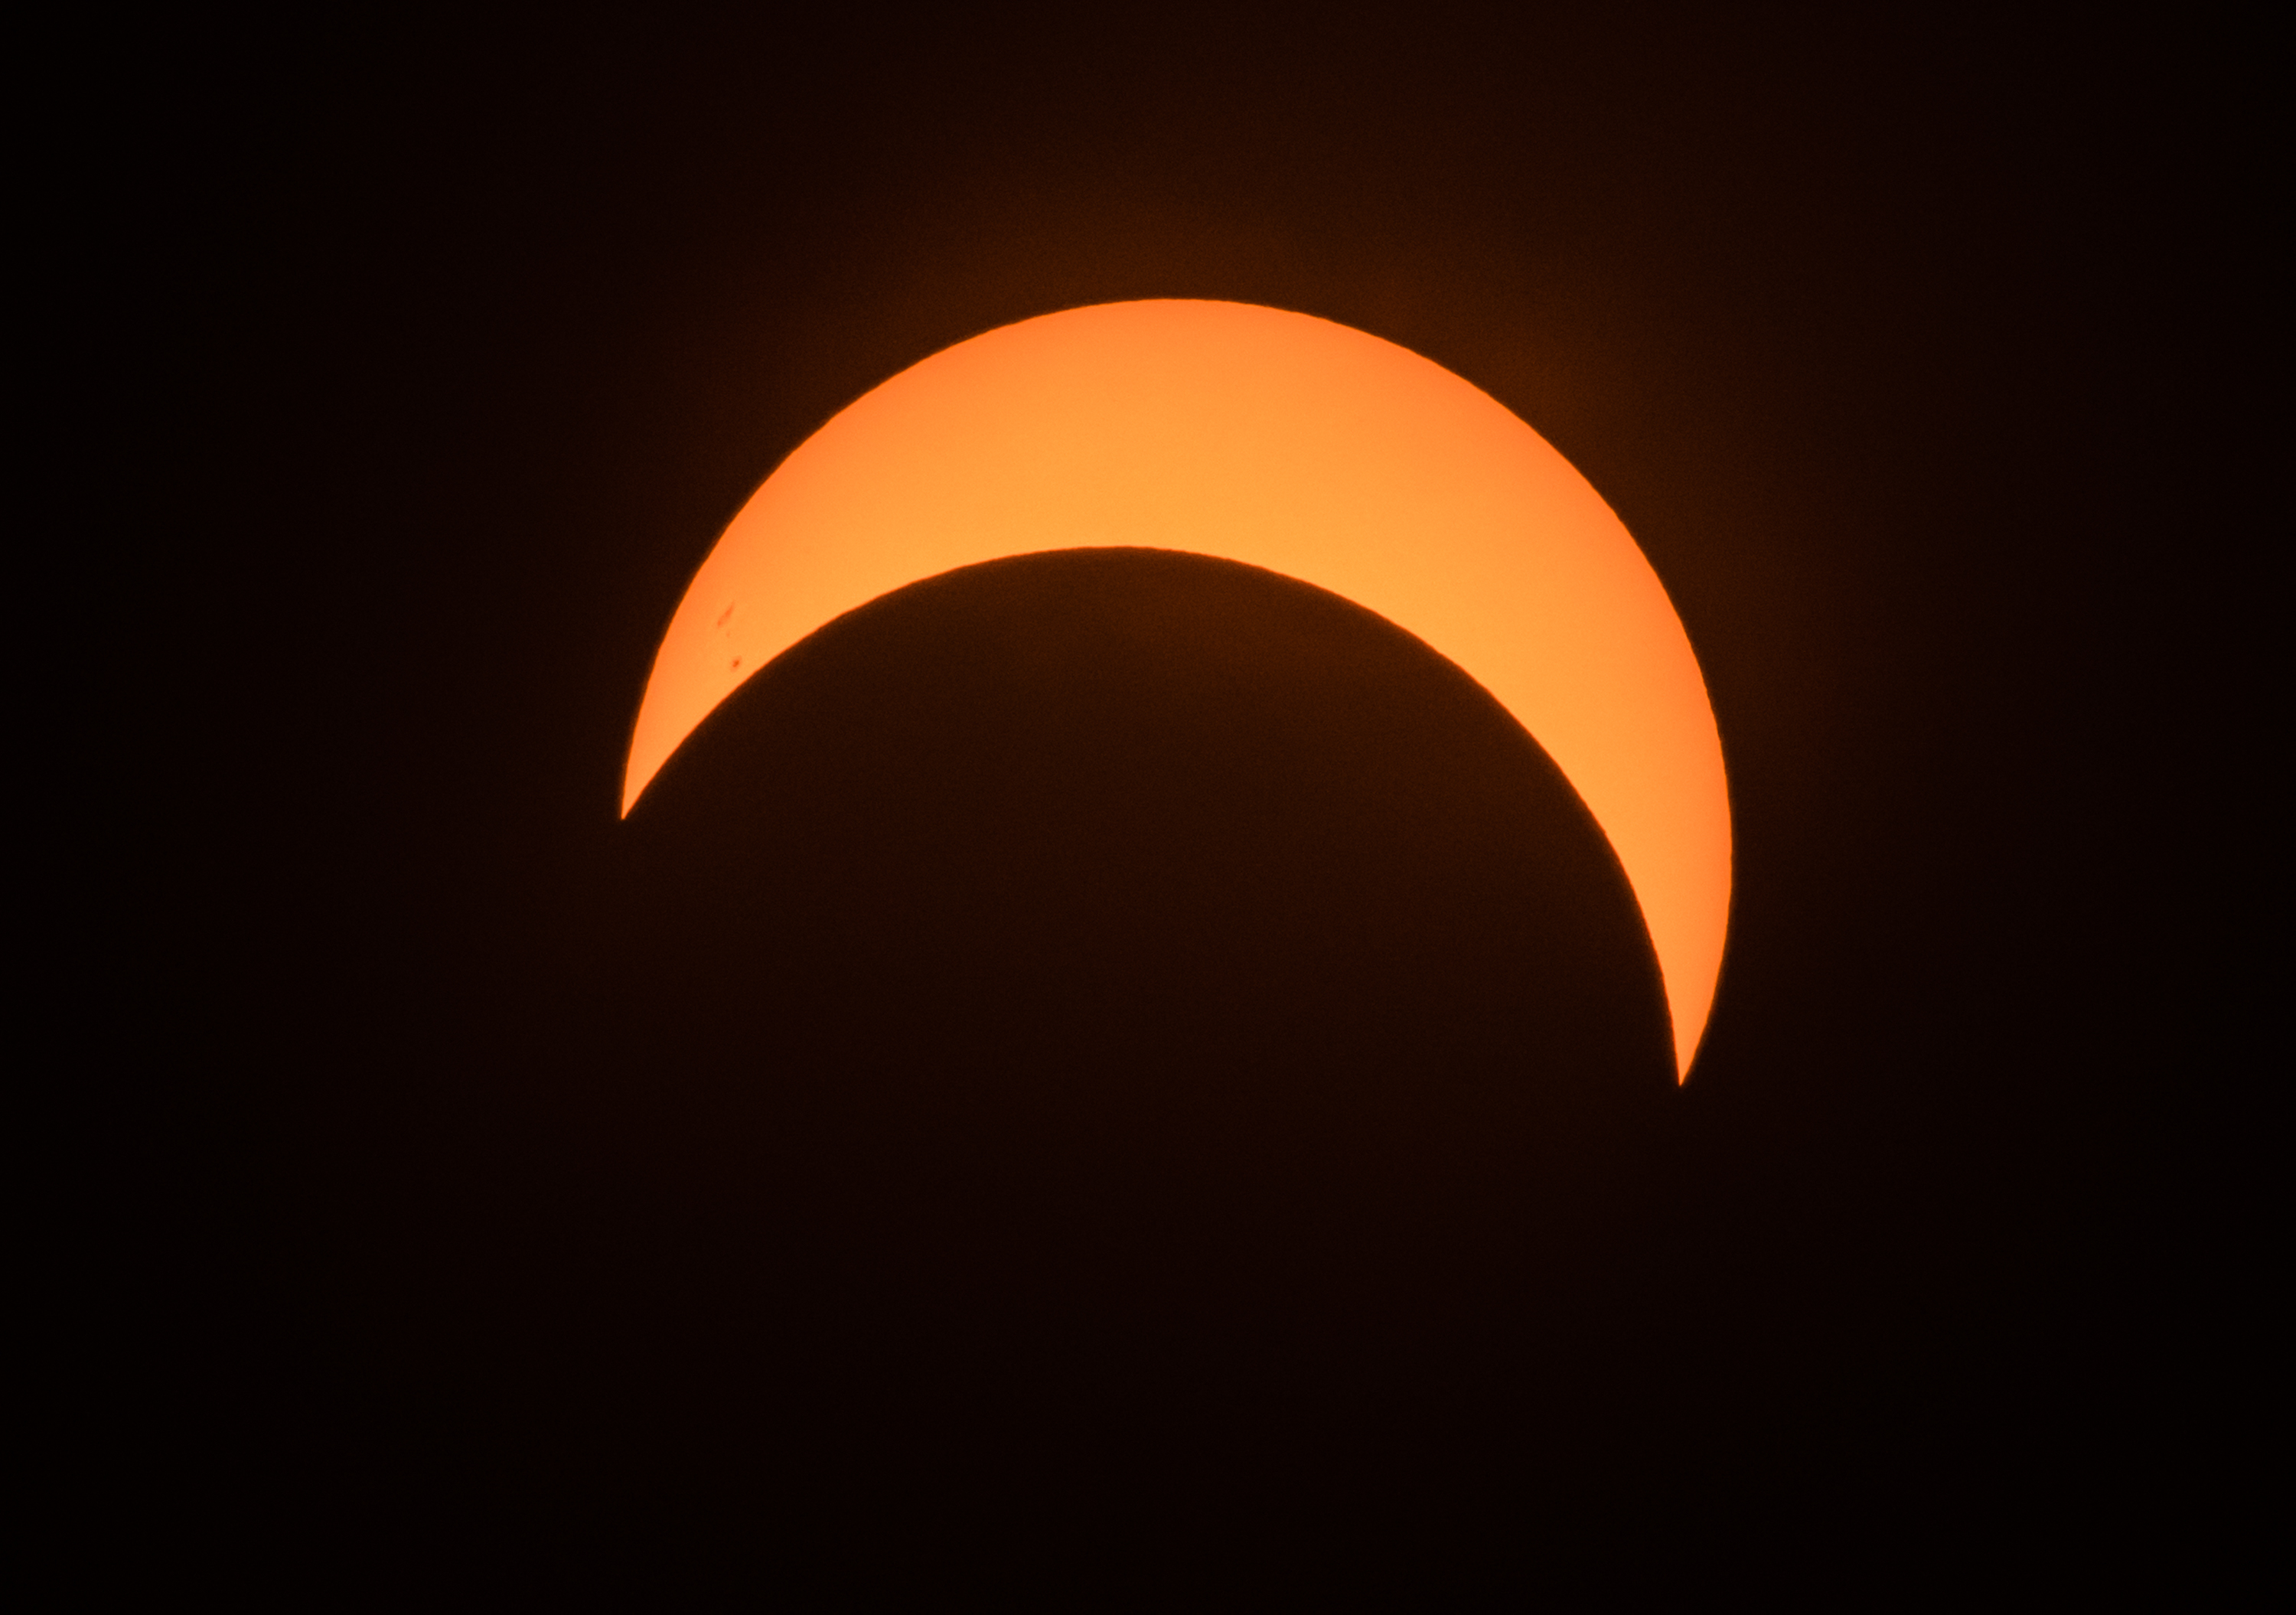 Partial solar eclipse captured during peak moment